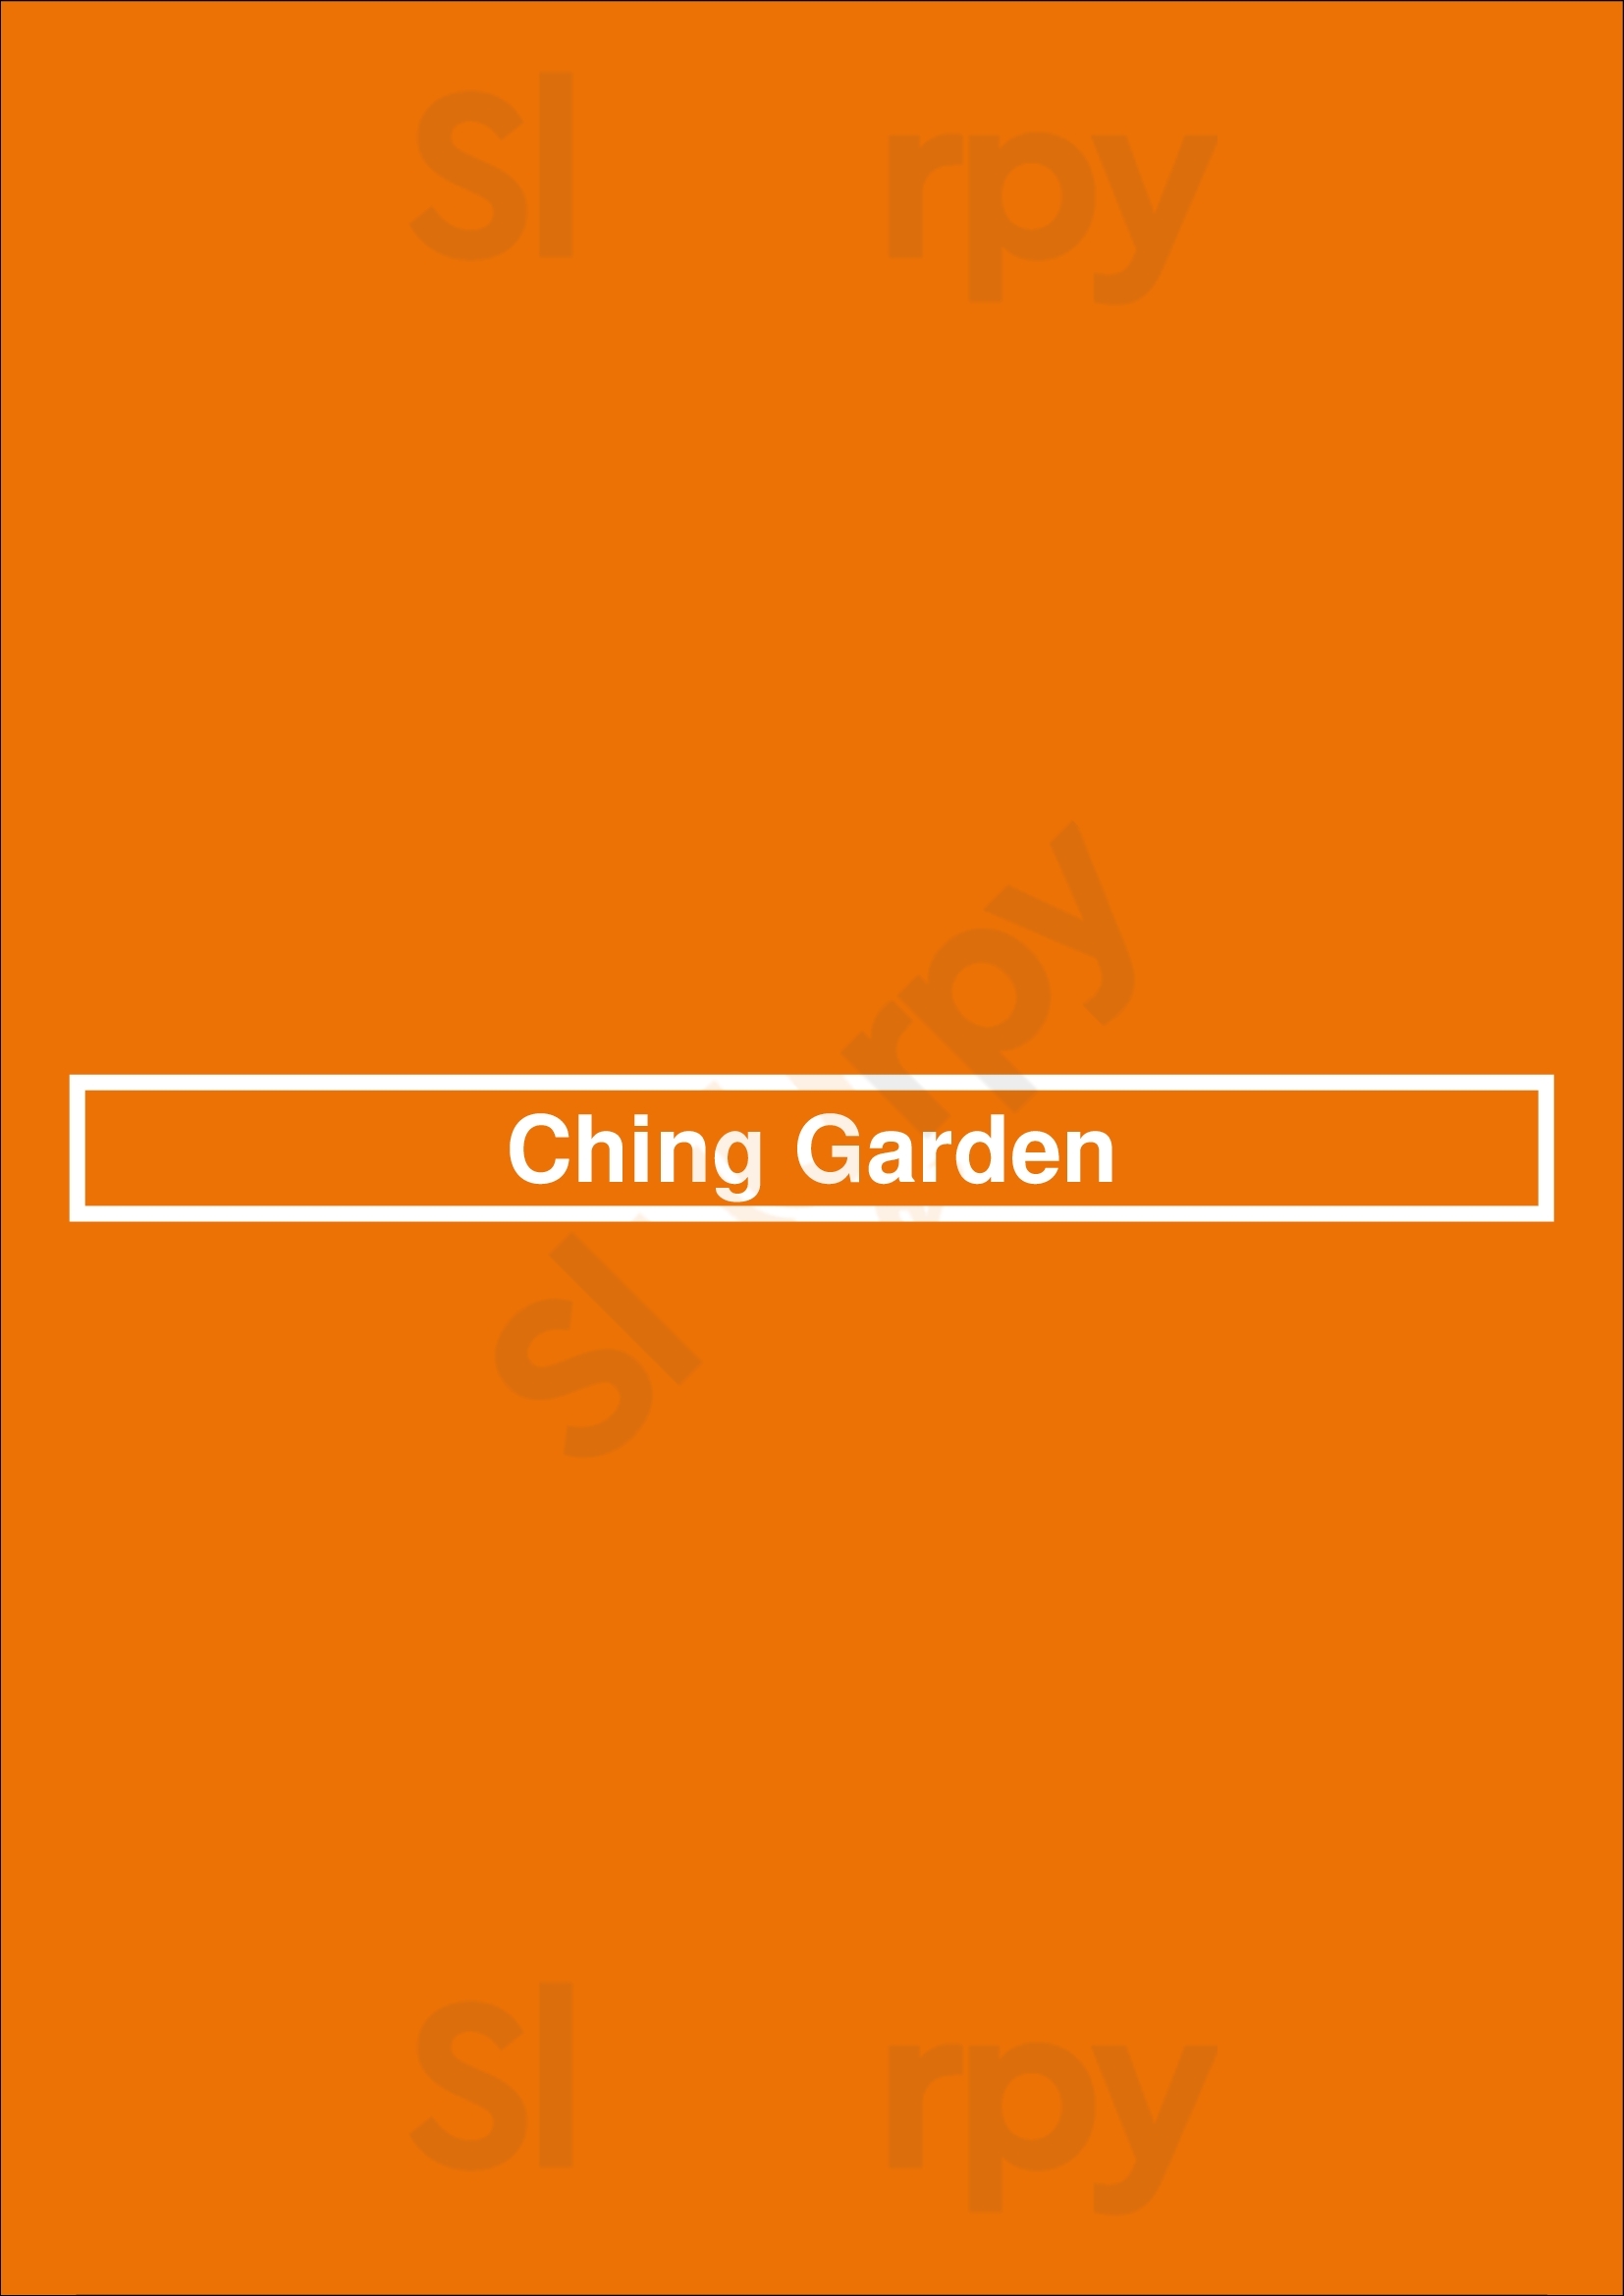 Ching Garden Greenwood Menu - 1